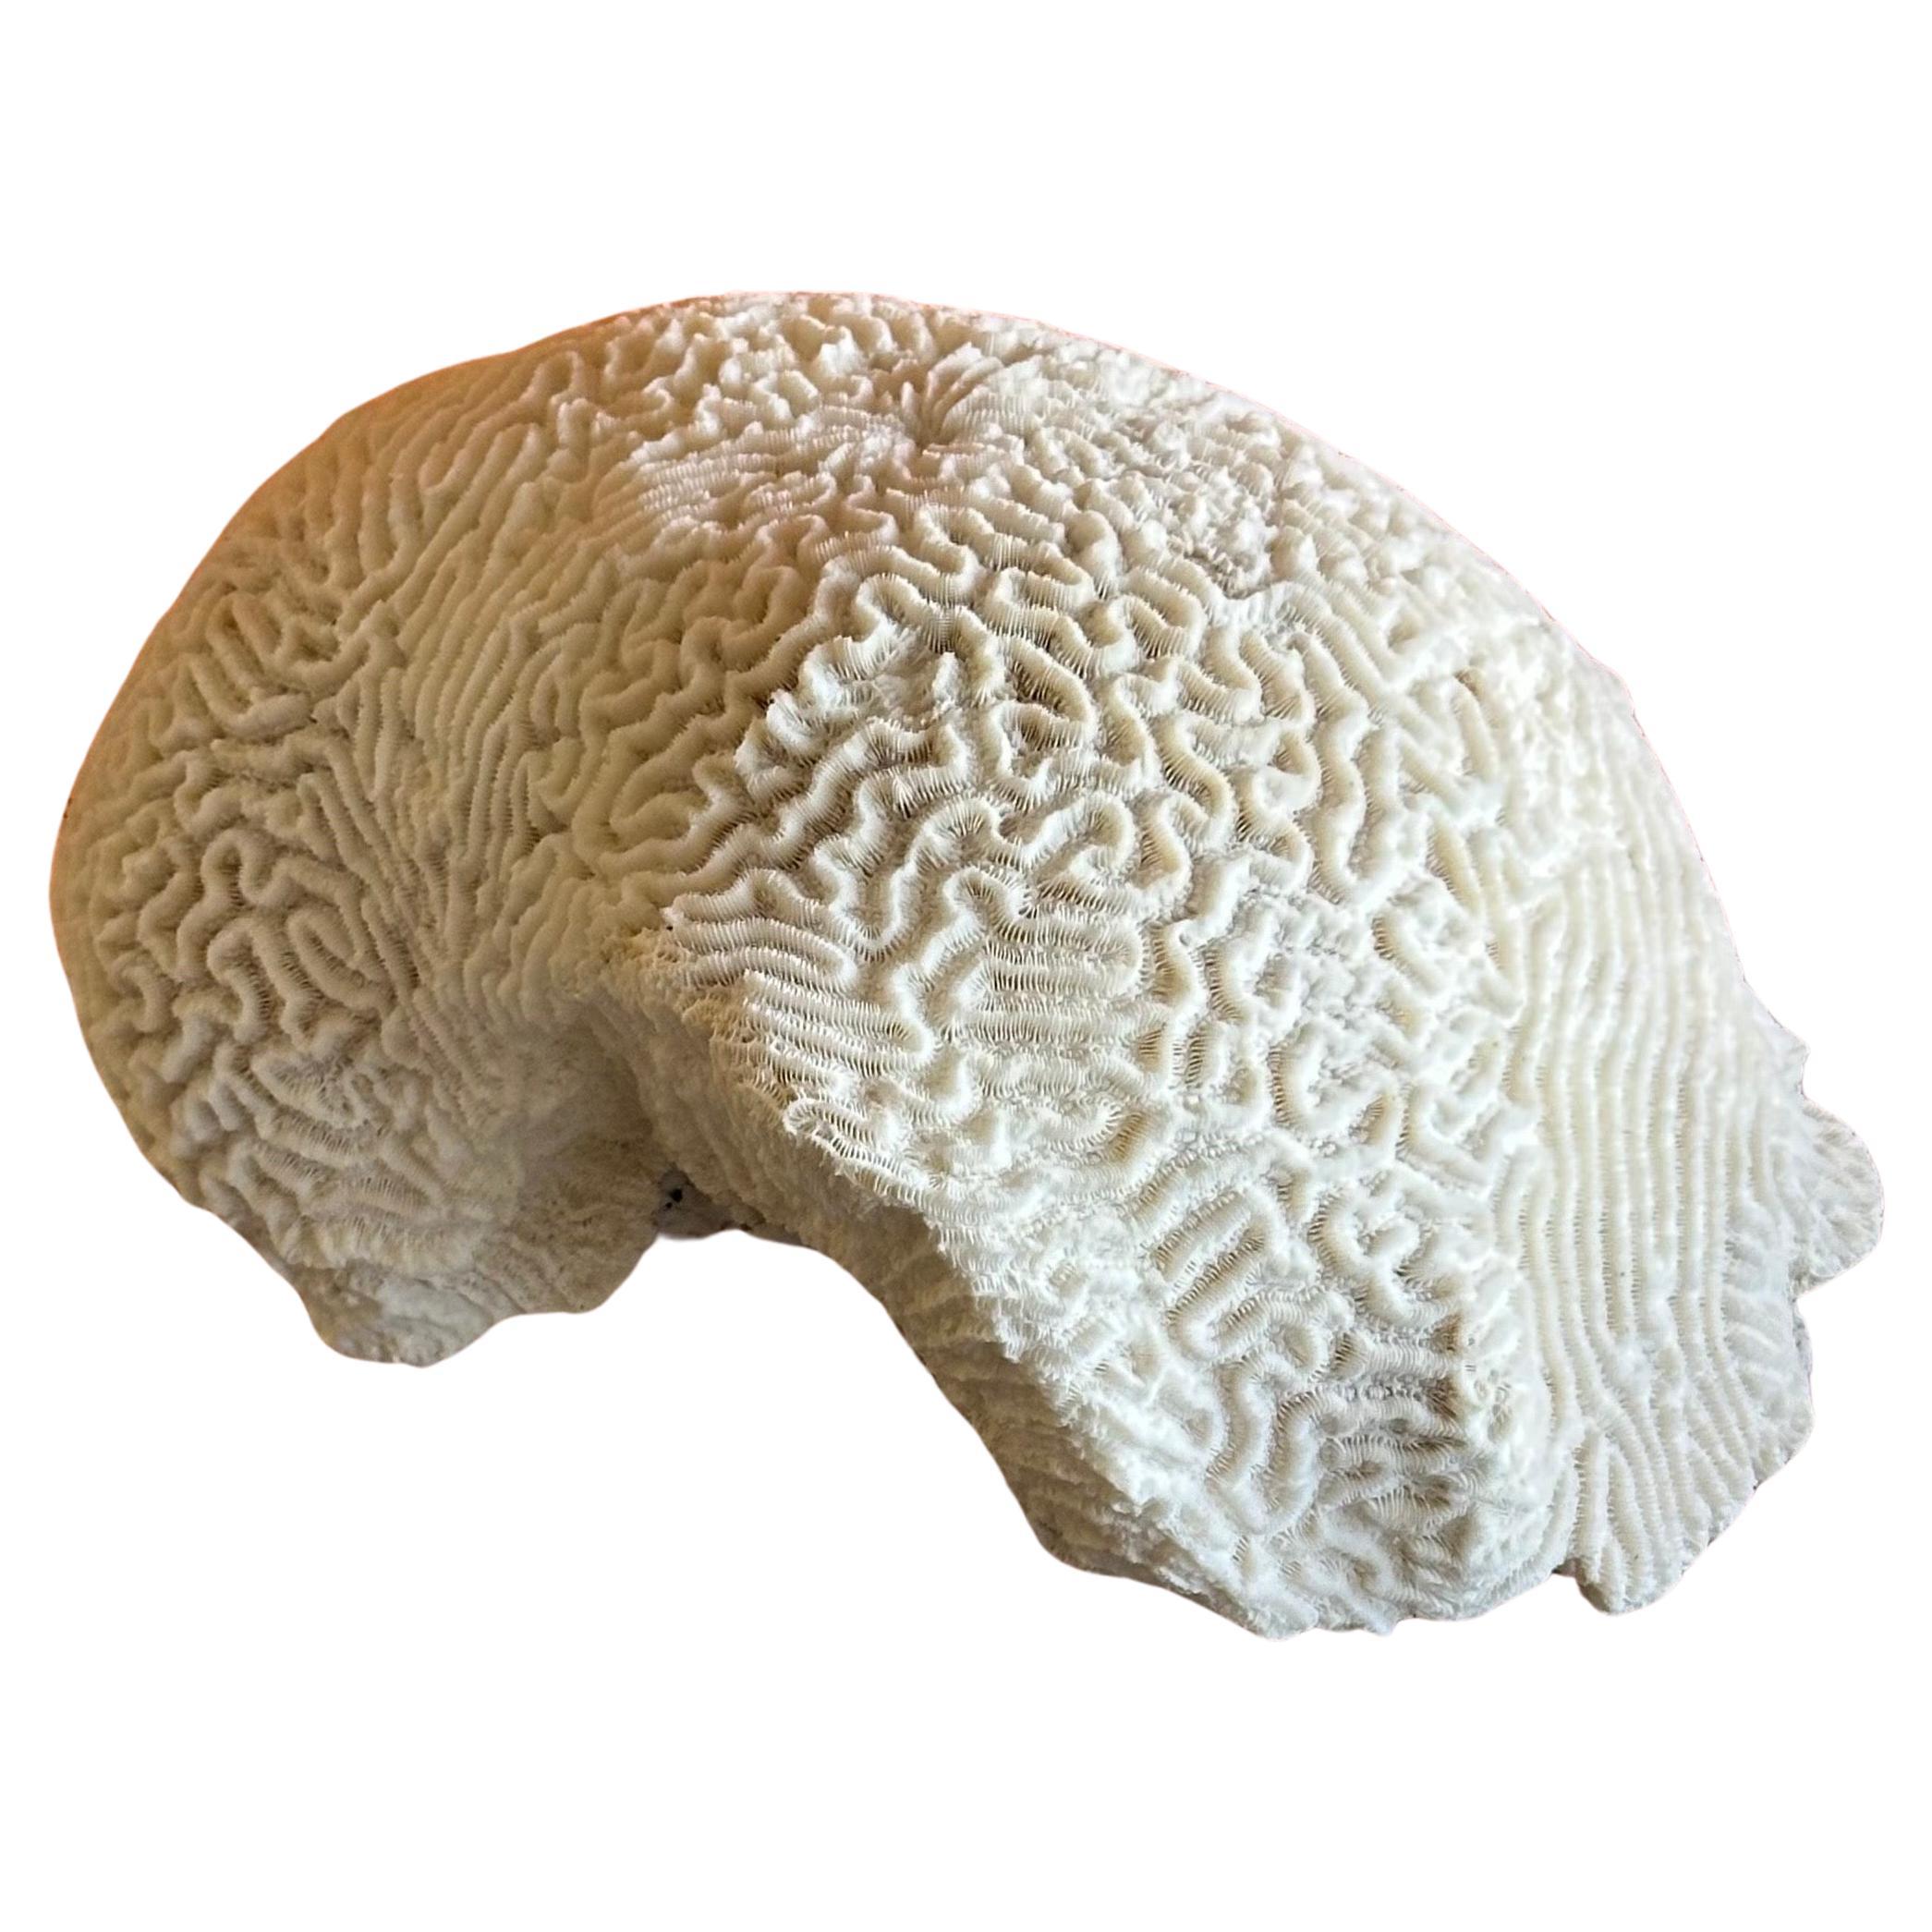 Große natürliche weiße "Gehirn" Meer Koralle Probe auf Lucite Stand